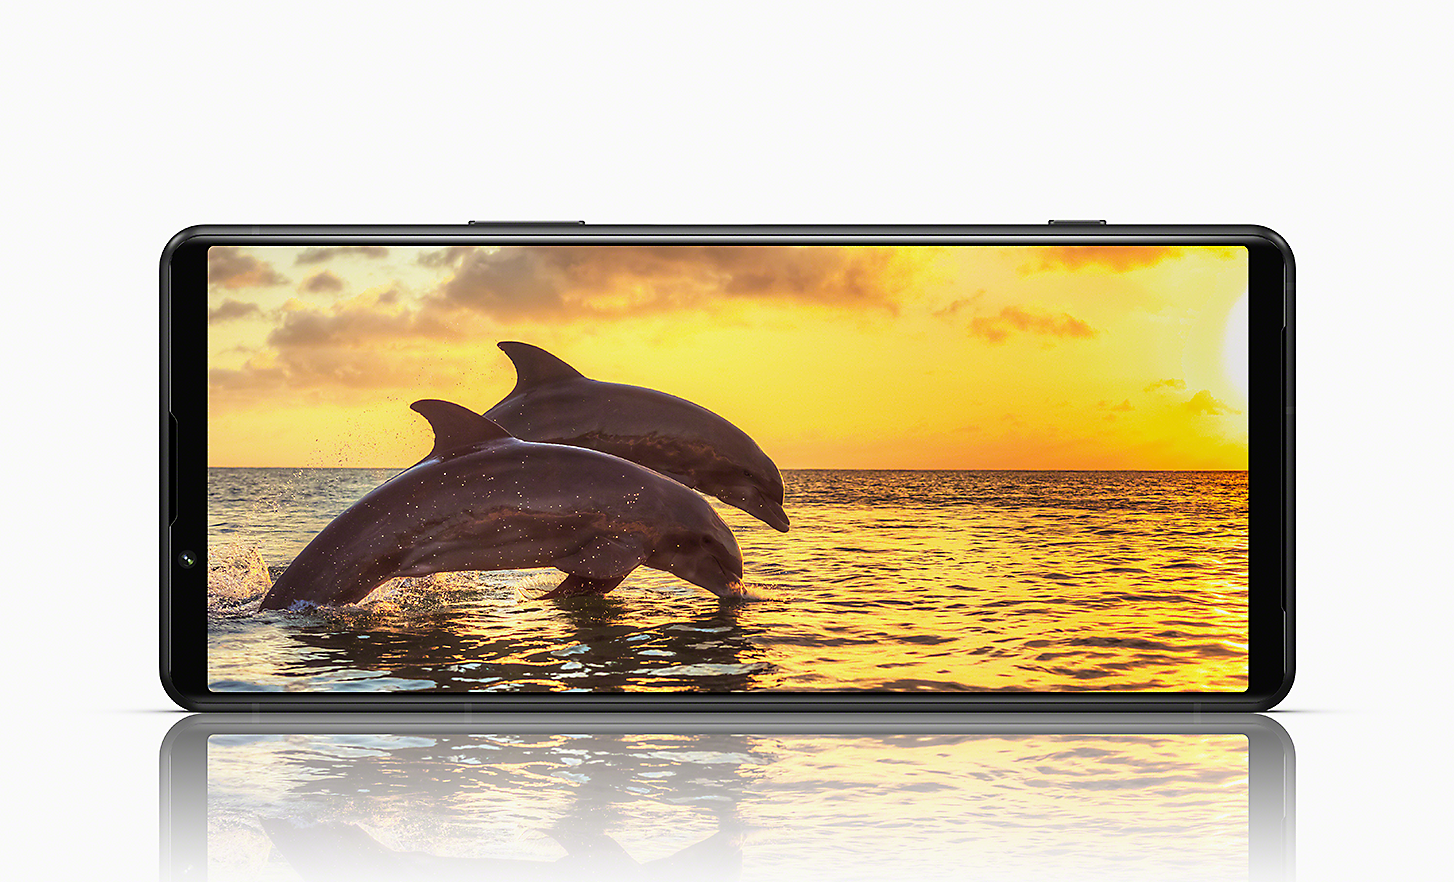 橫向的 Xperia 5 IV 正在顯示海豚從海中躍出的日落影像